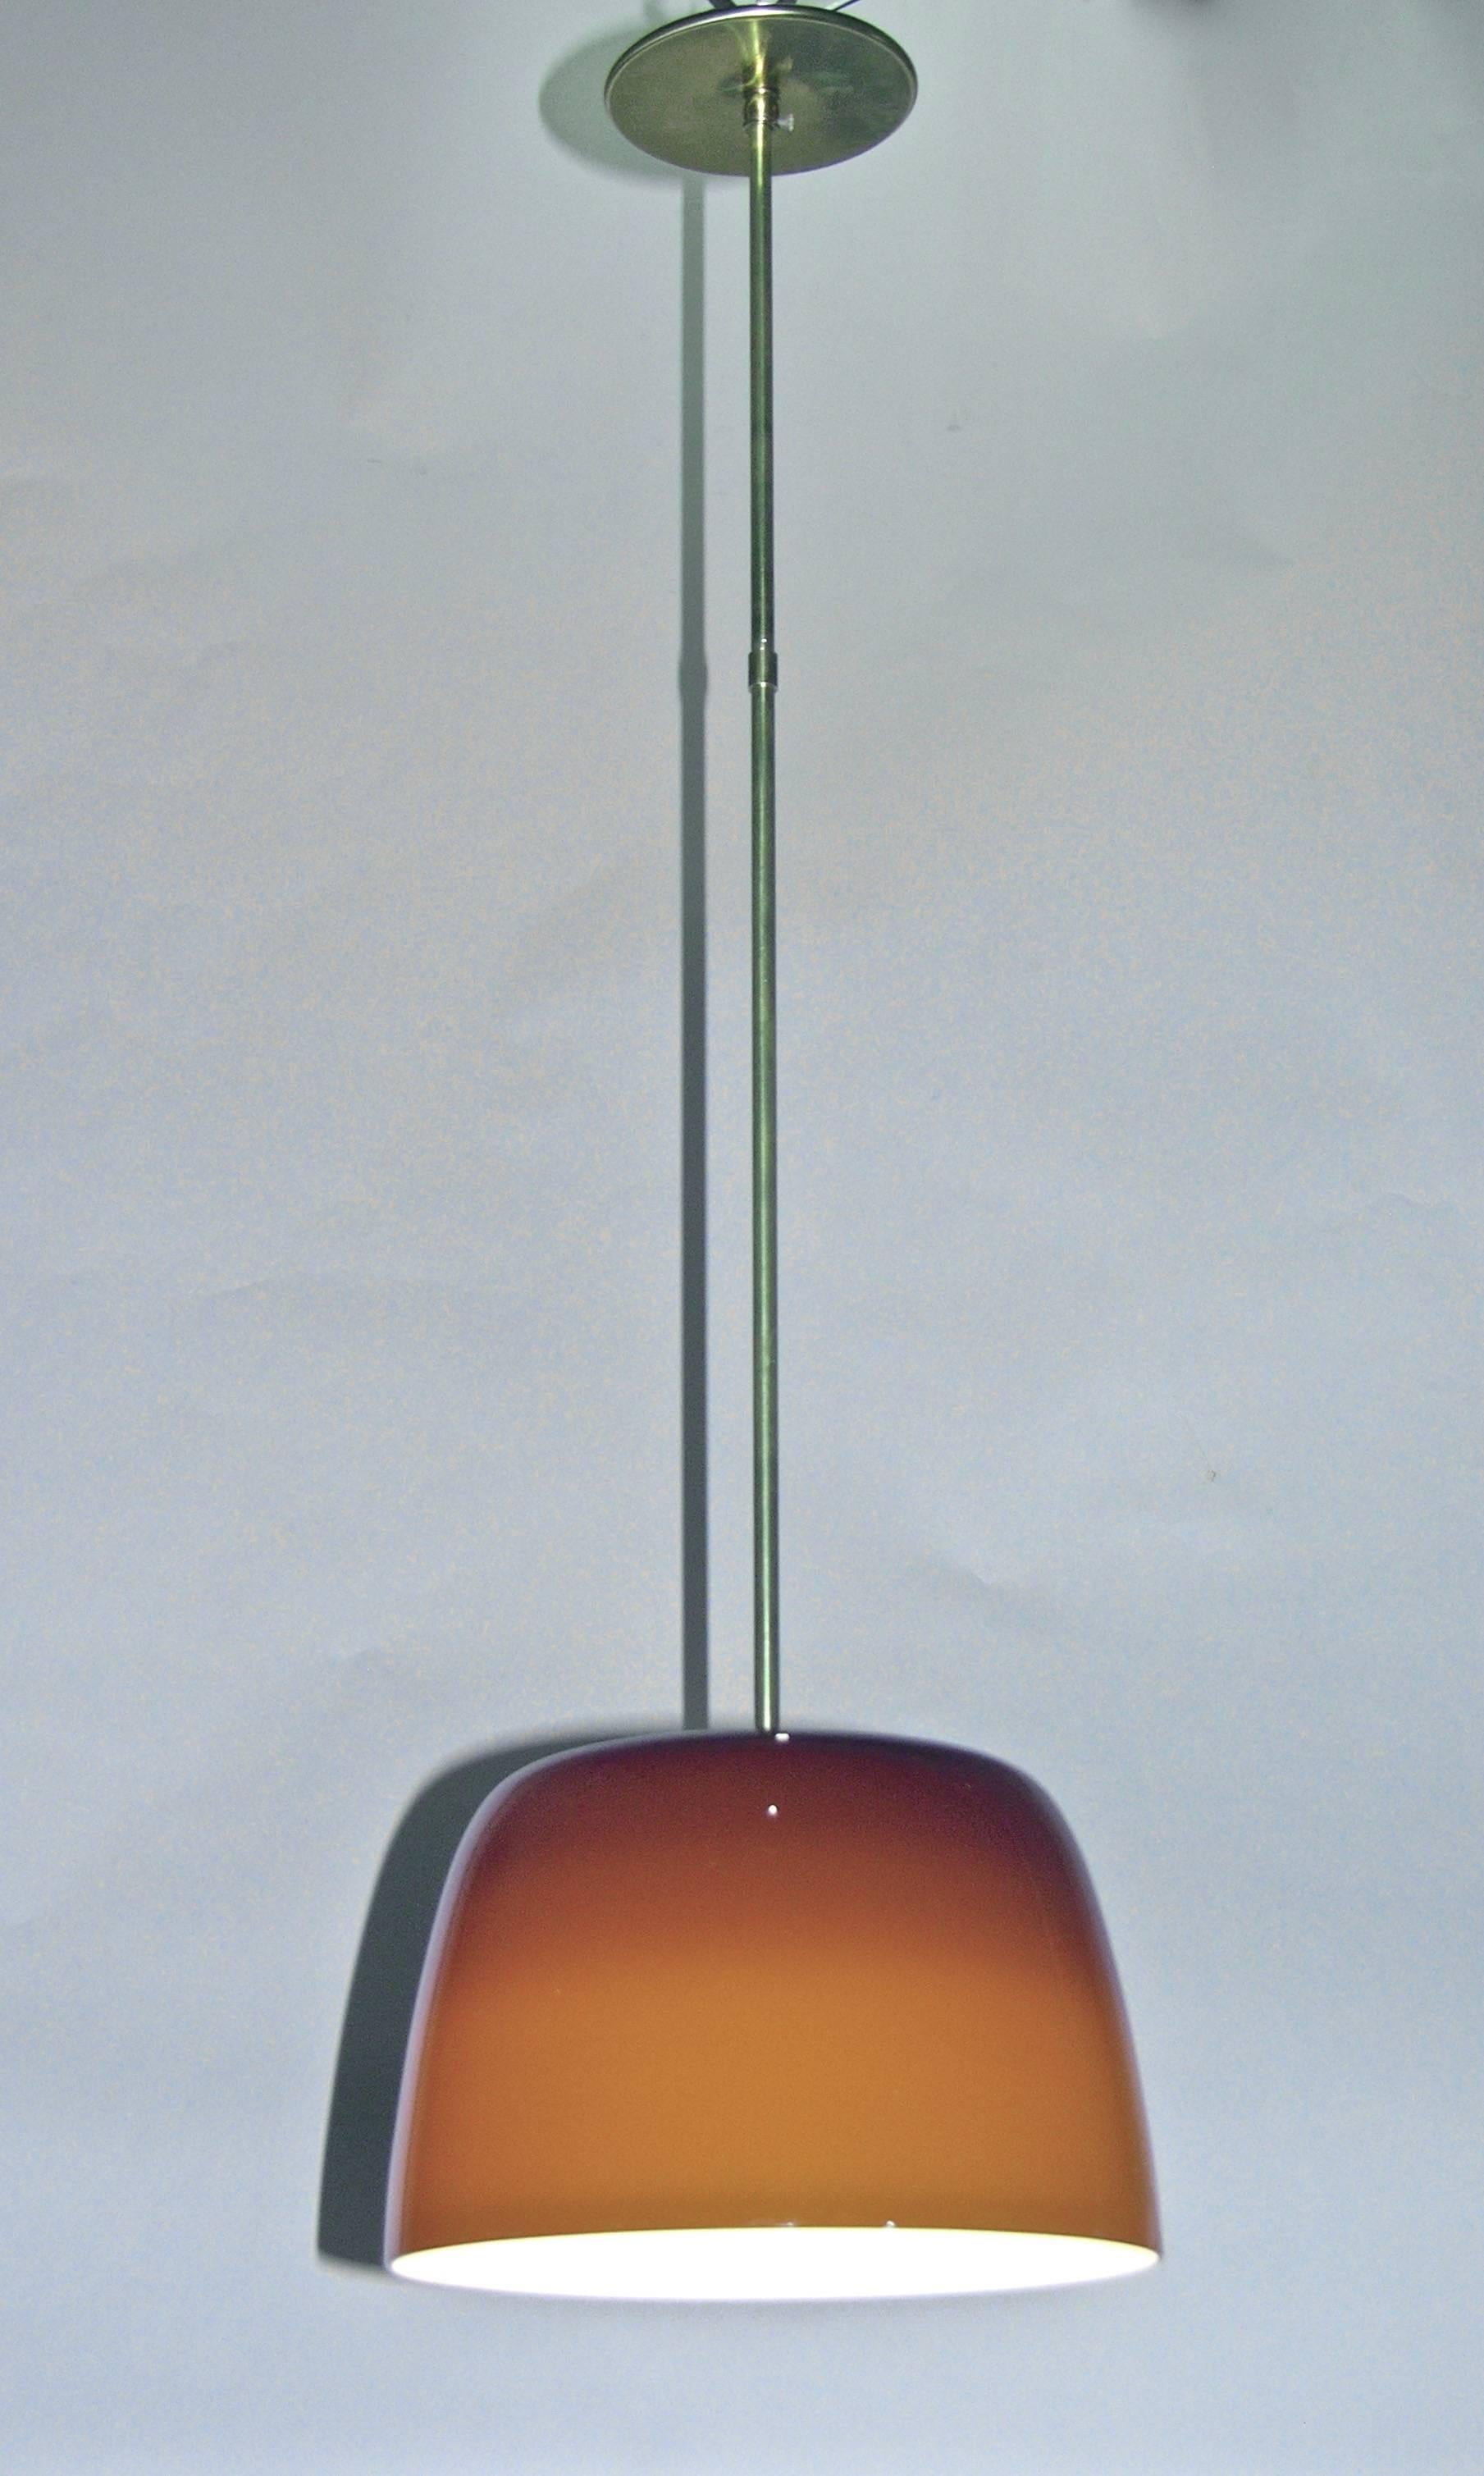 Diese Vintage-Pendelleuchte besteht aus hochwertigem Kaffee-Murano-Glas, das zur Intensivierung des Lichts weiß überfangen wurde. Das Design ist raffiniert durchdacht mit einer konkaven Oberseite, um die Befestigung der Messingstange zu verbergen